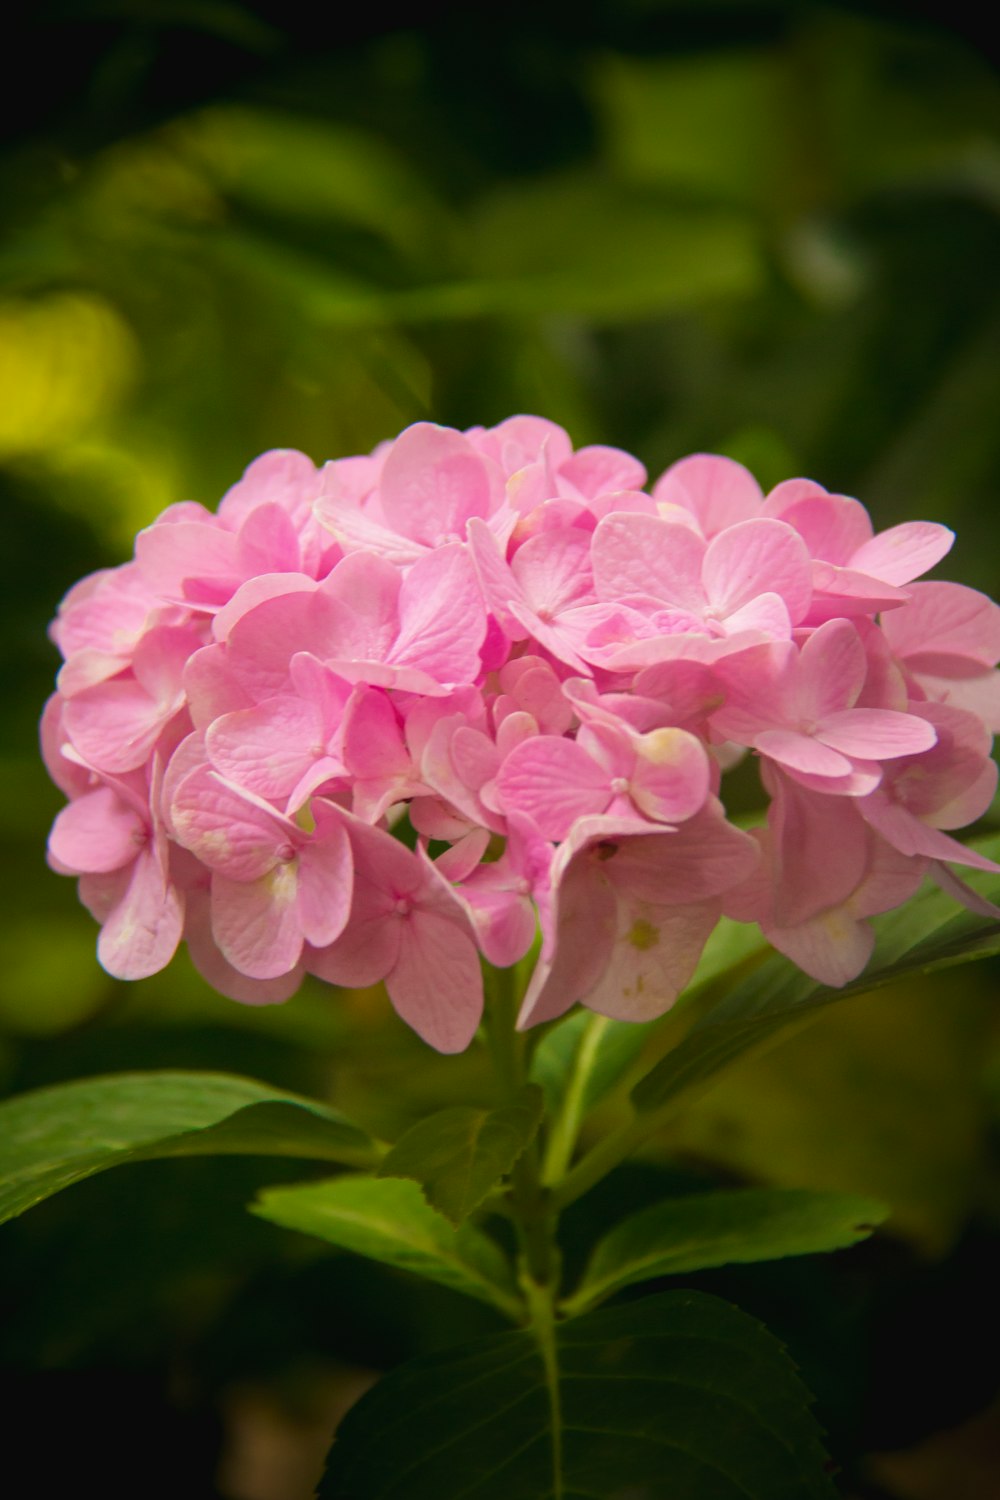 flor rosa e branca na fotografia da lente macro